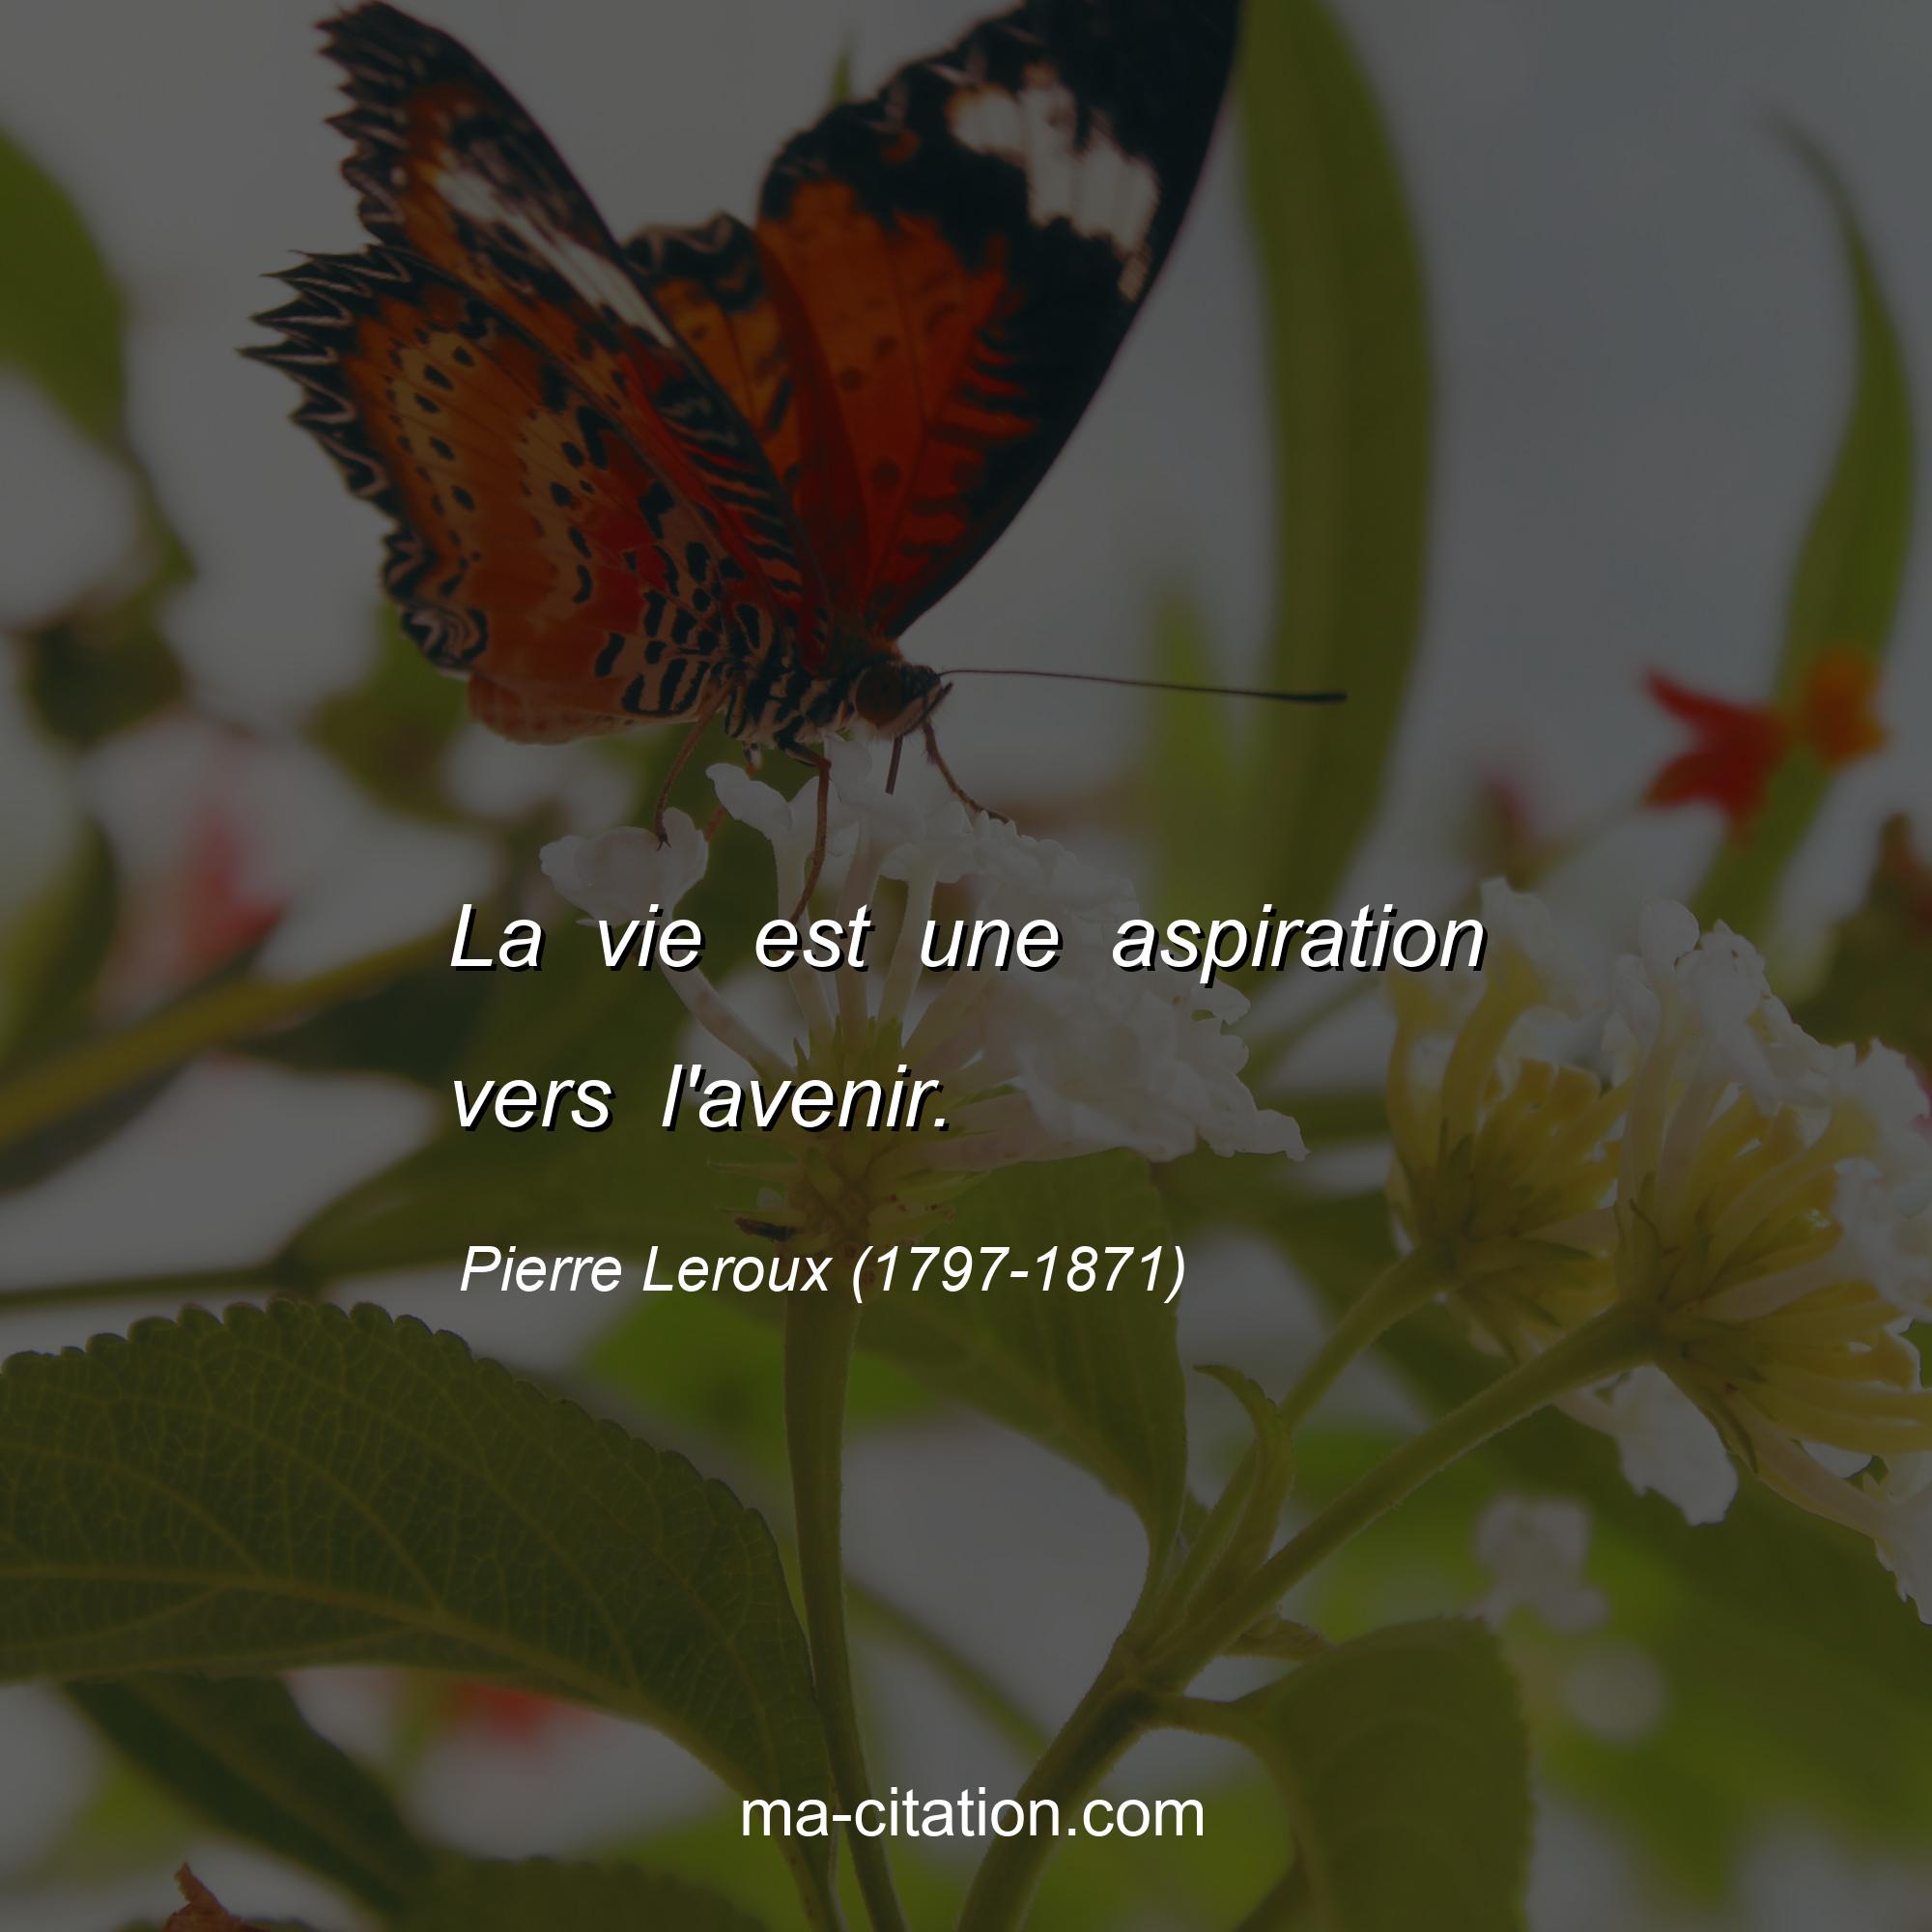 Pierre Leroux (1797-1871) : La vie est une aspiration vers l'avenir.